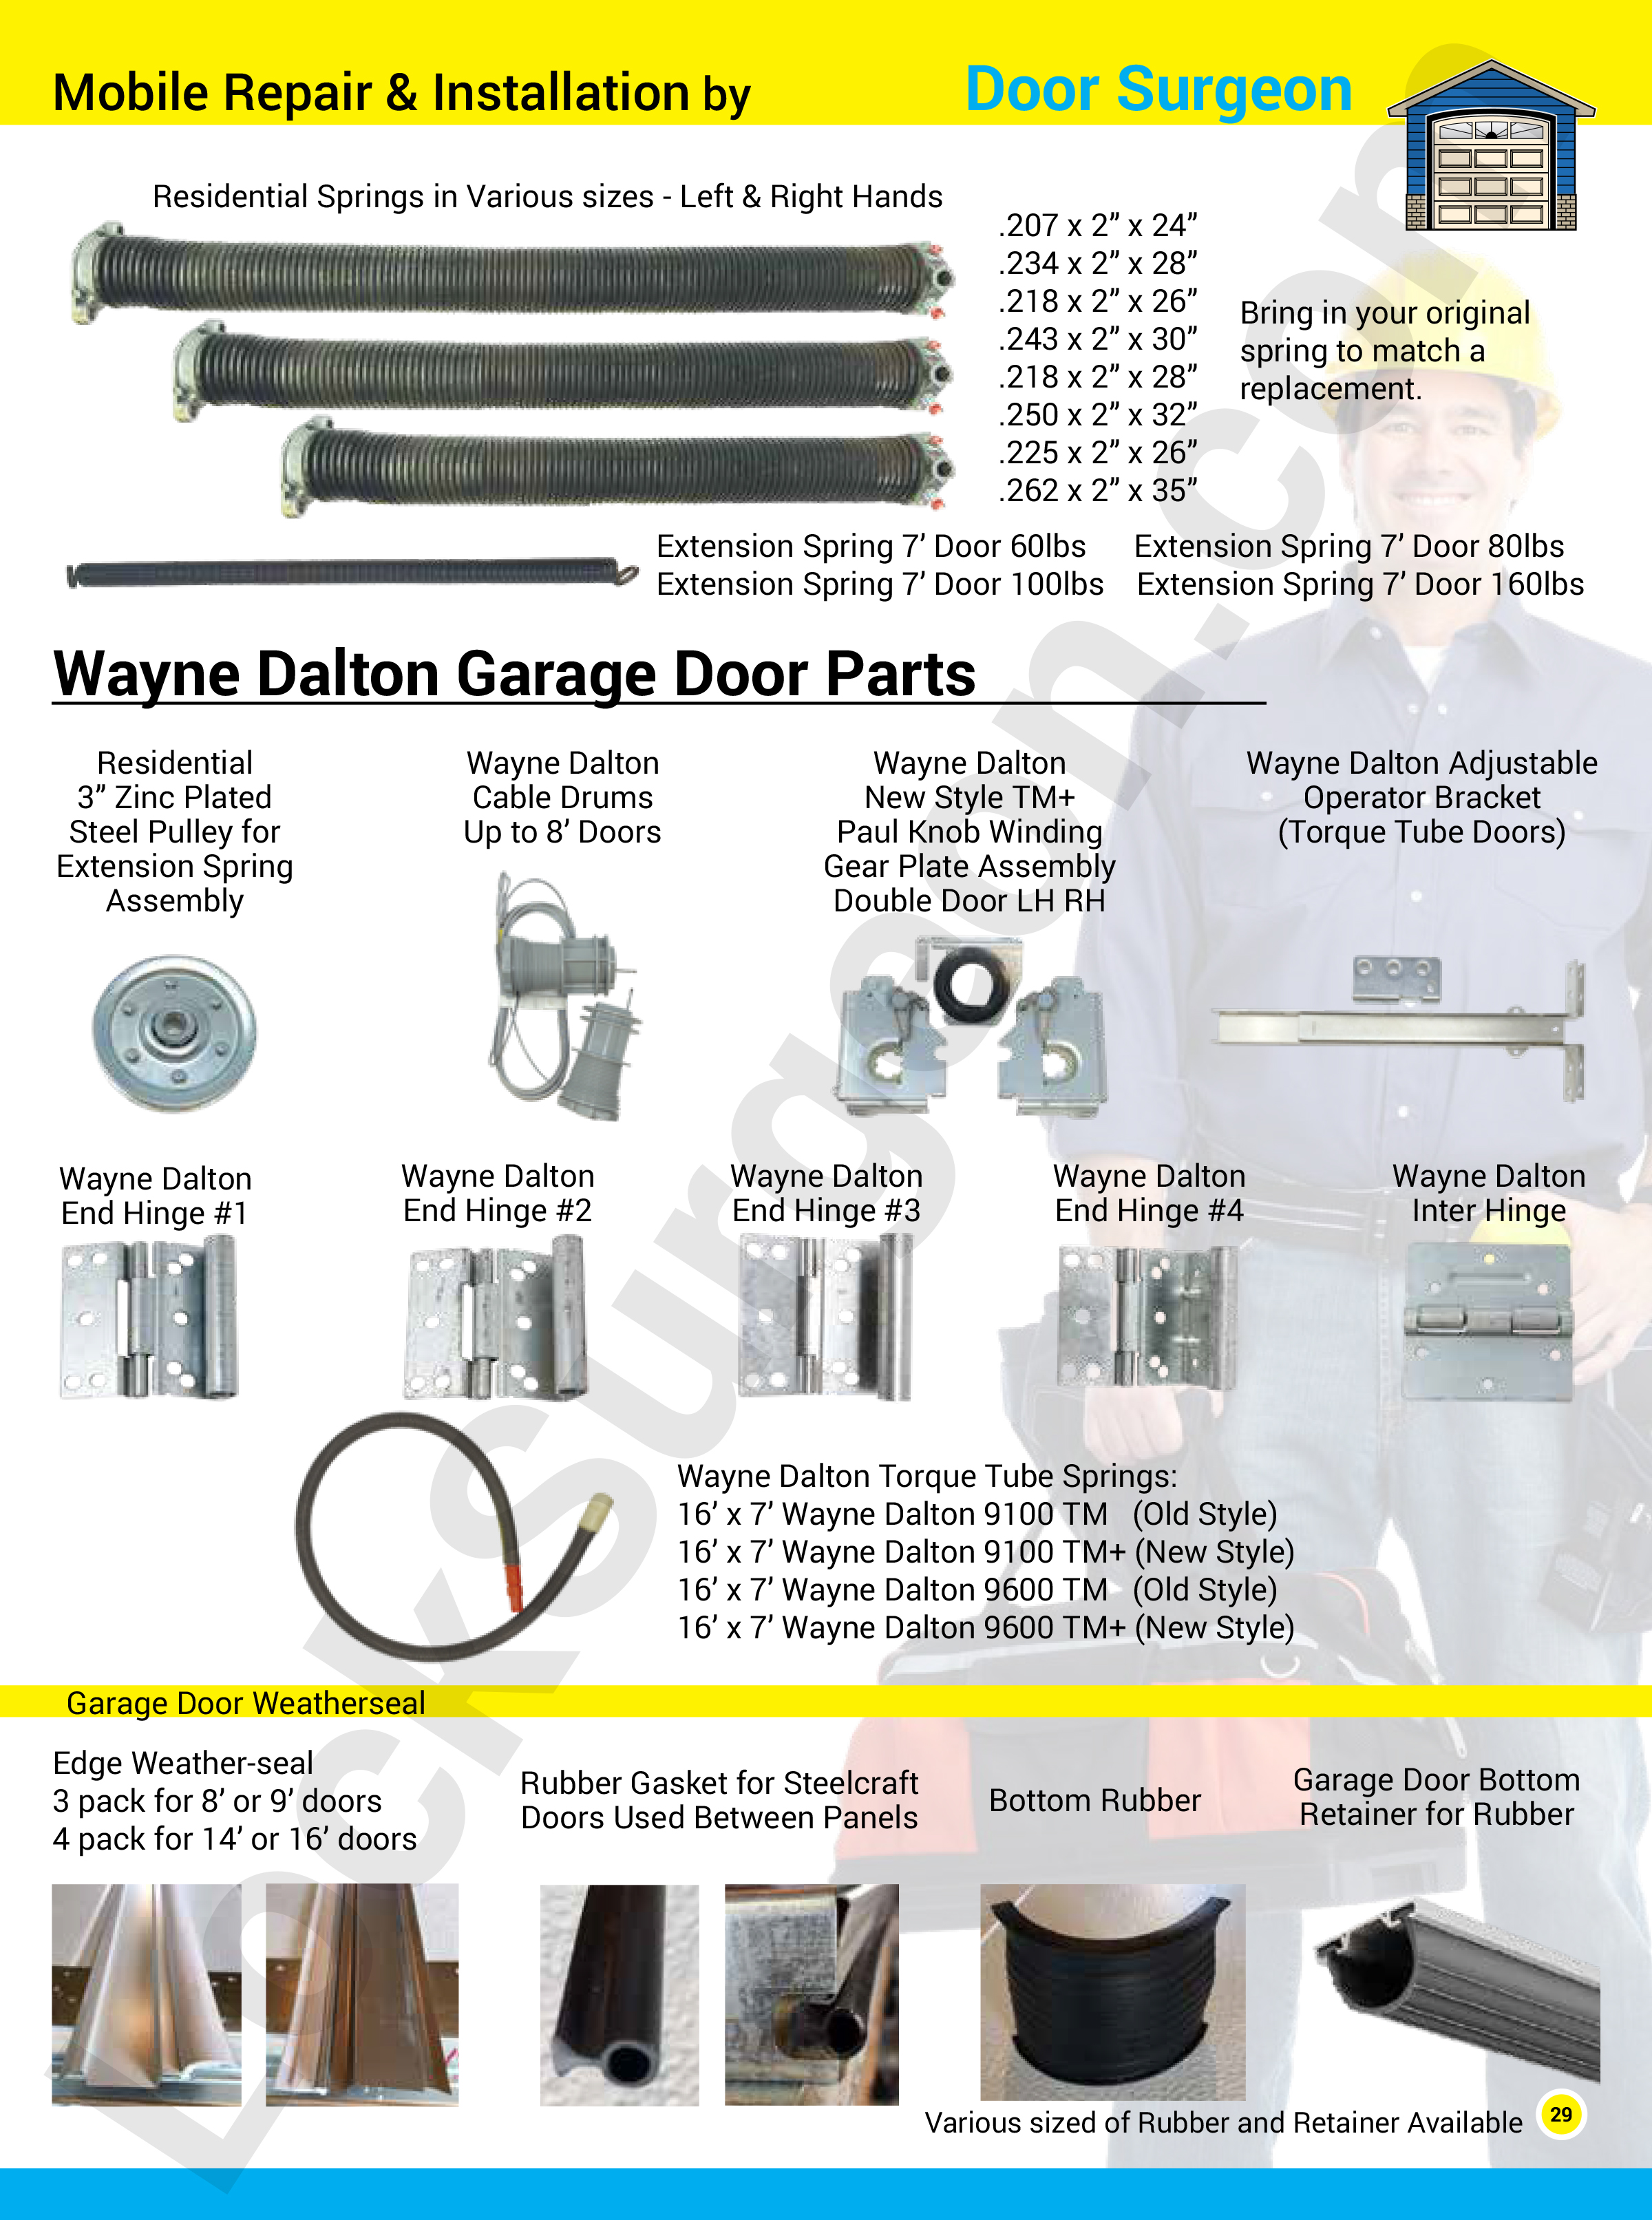 Garage door part solutions for home, commercial, & trucks. Garage door repairs, replacement parts.